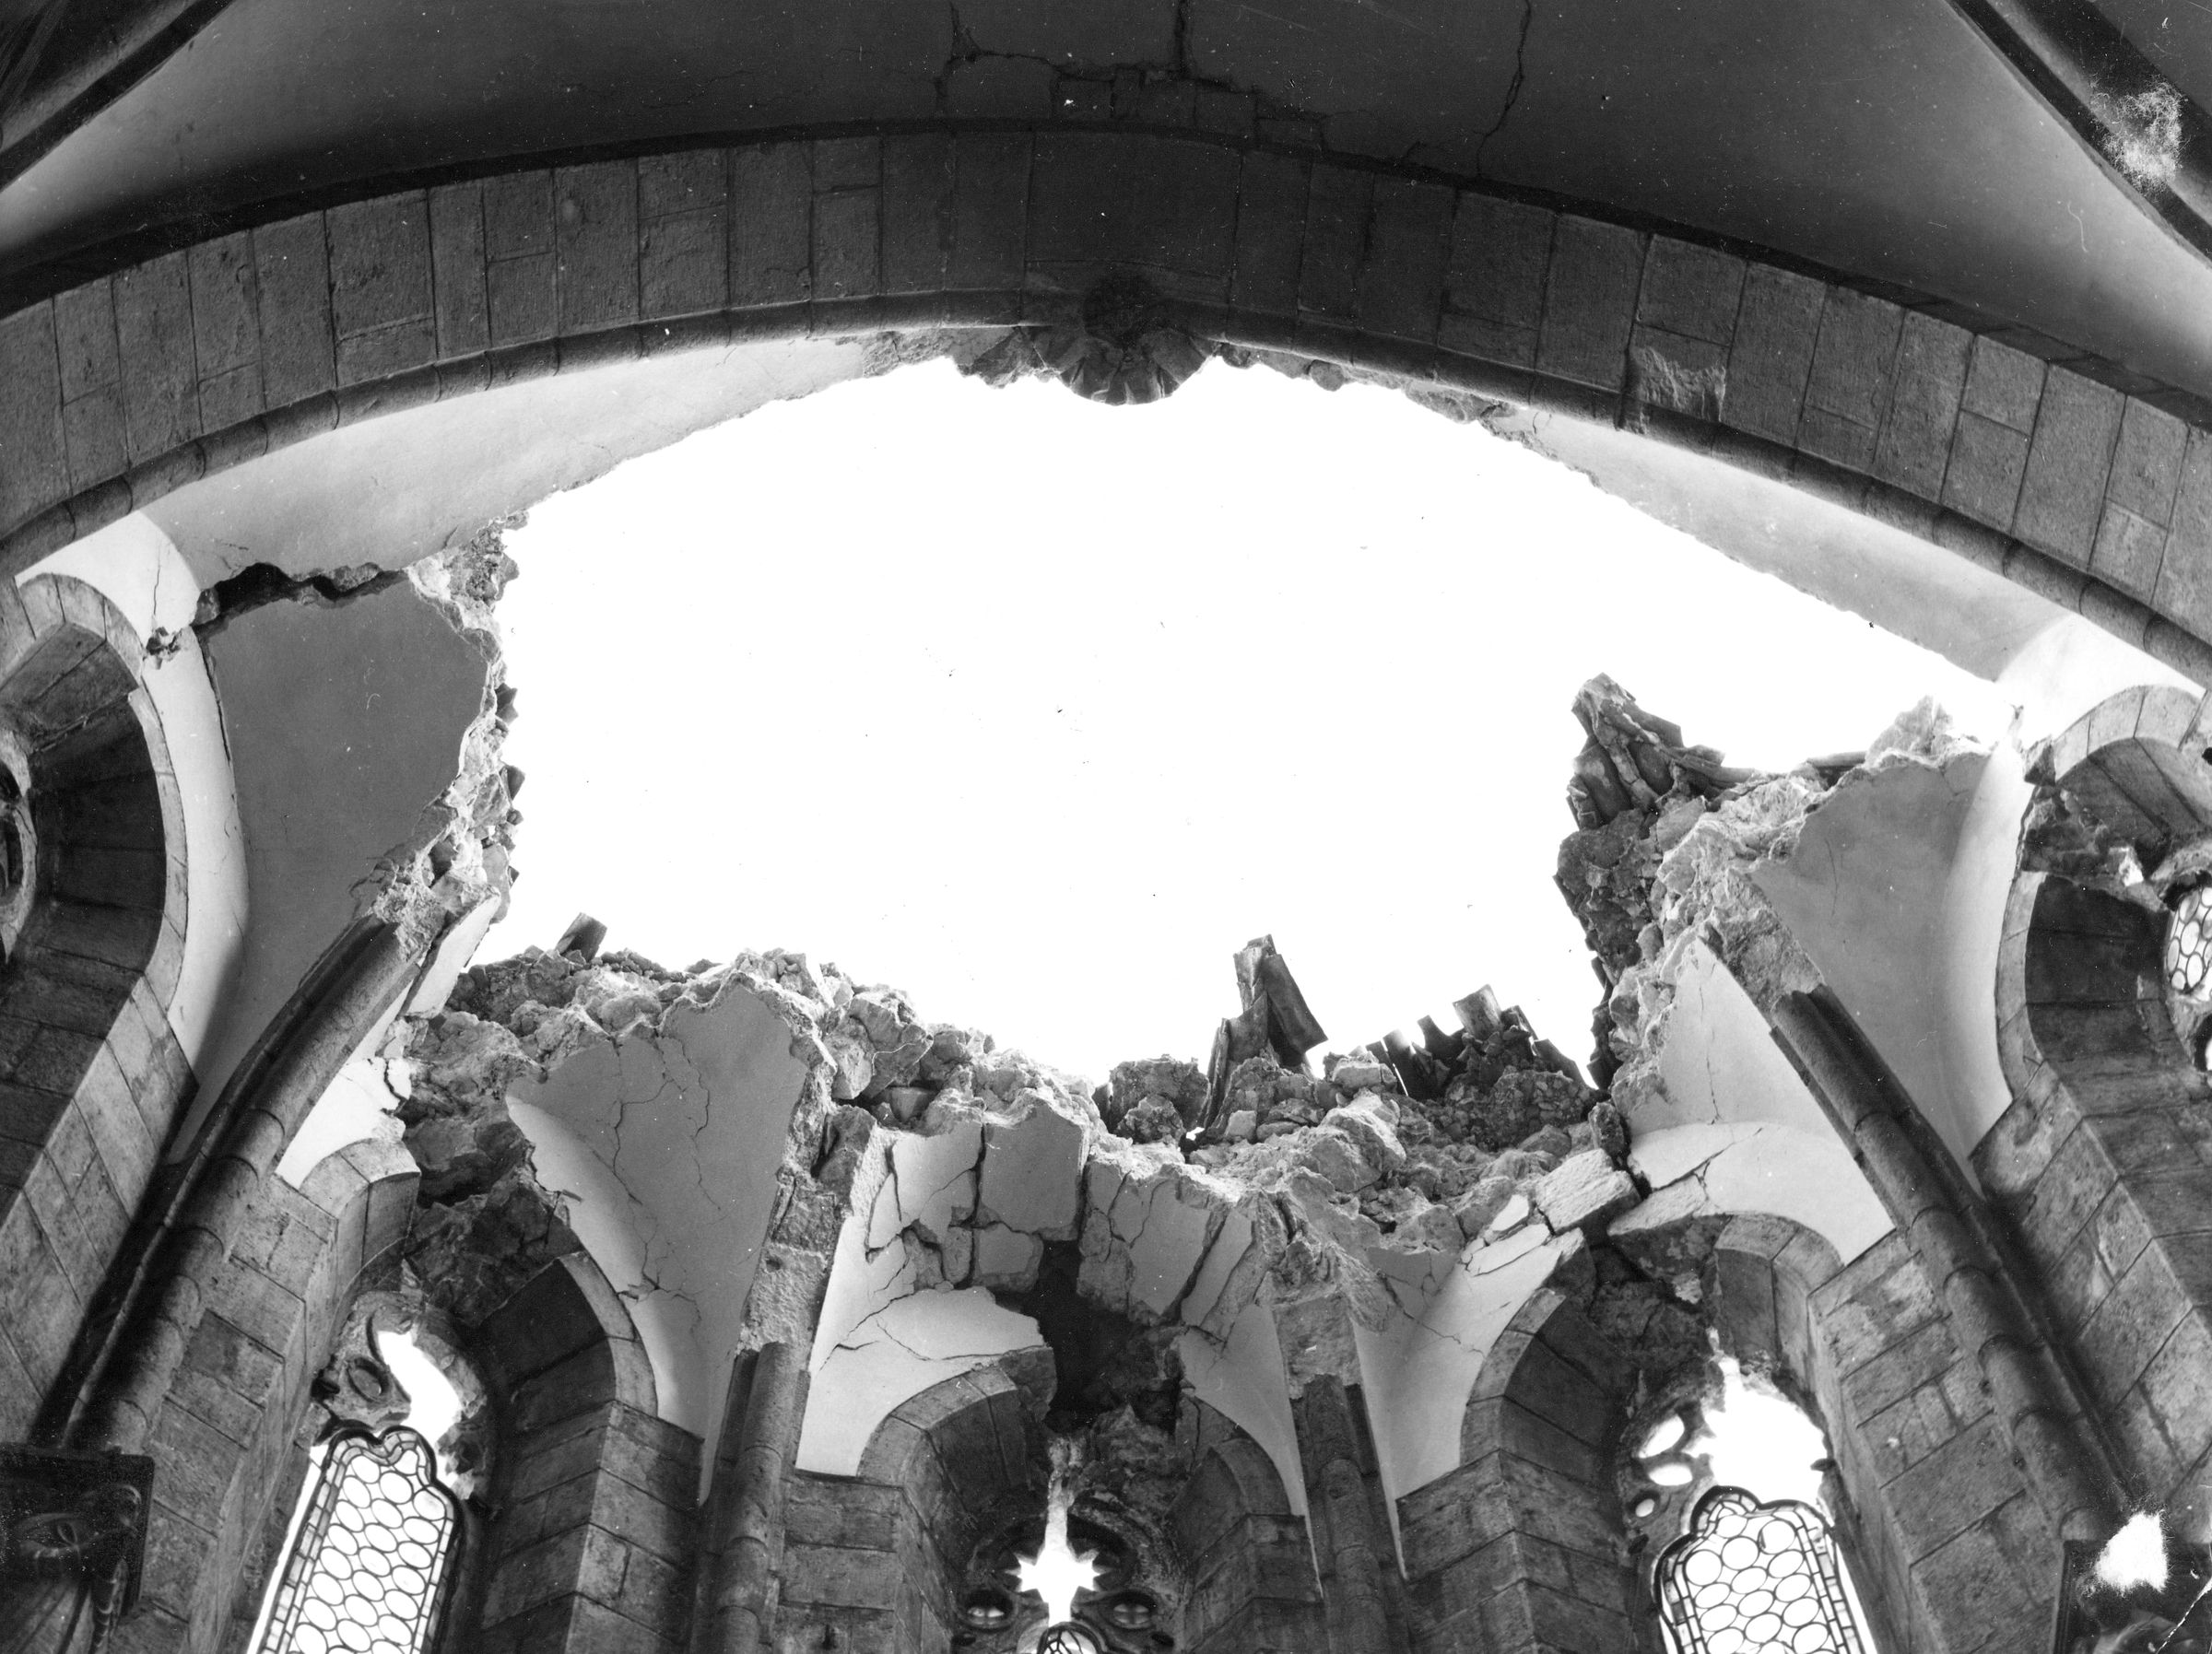 Fotografo non identificato, Venzone - Terremoto, Duomo di S. Andrea Apostolo, abside, vista di dettaglio, interno, 1976, gelatina ai sali d'argento/pellicola (acetati), 6x6cm,  N029849